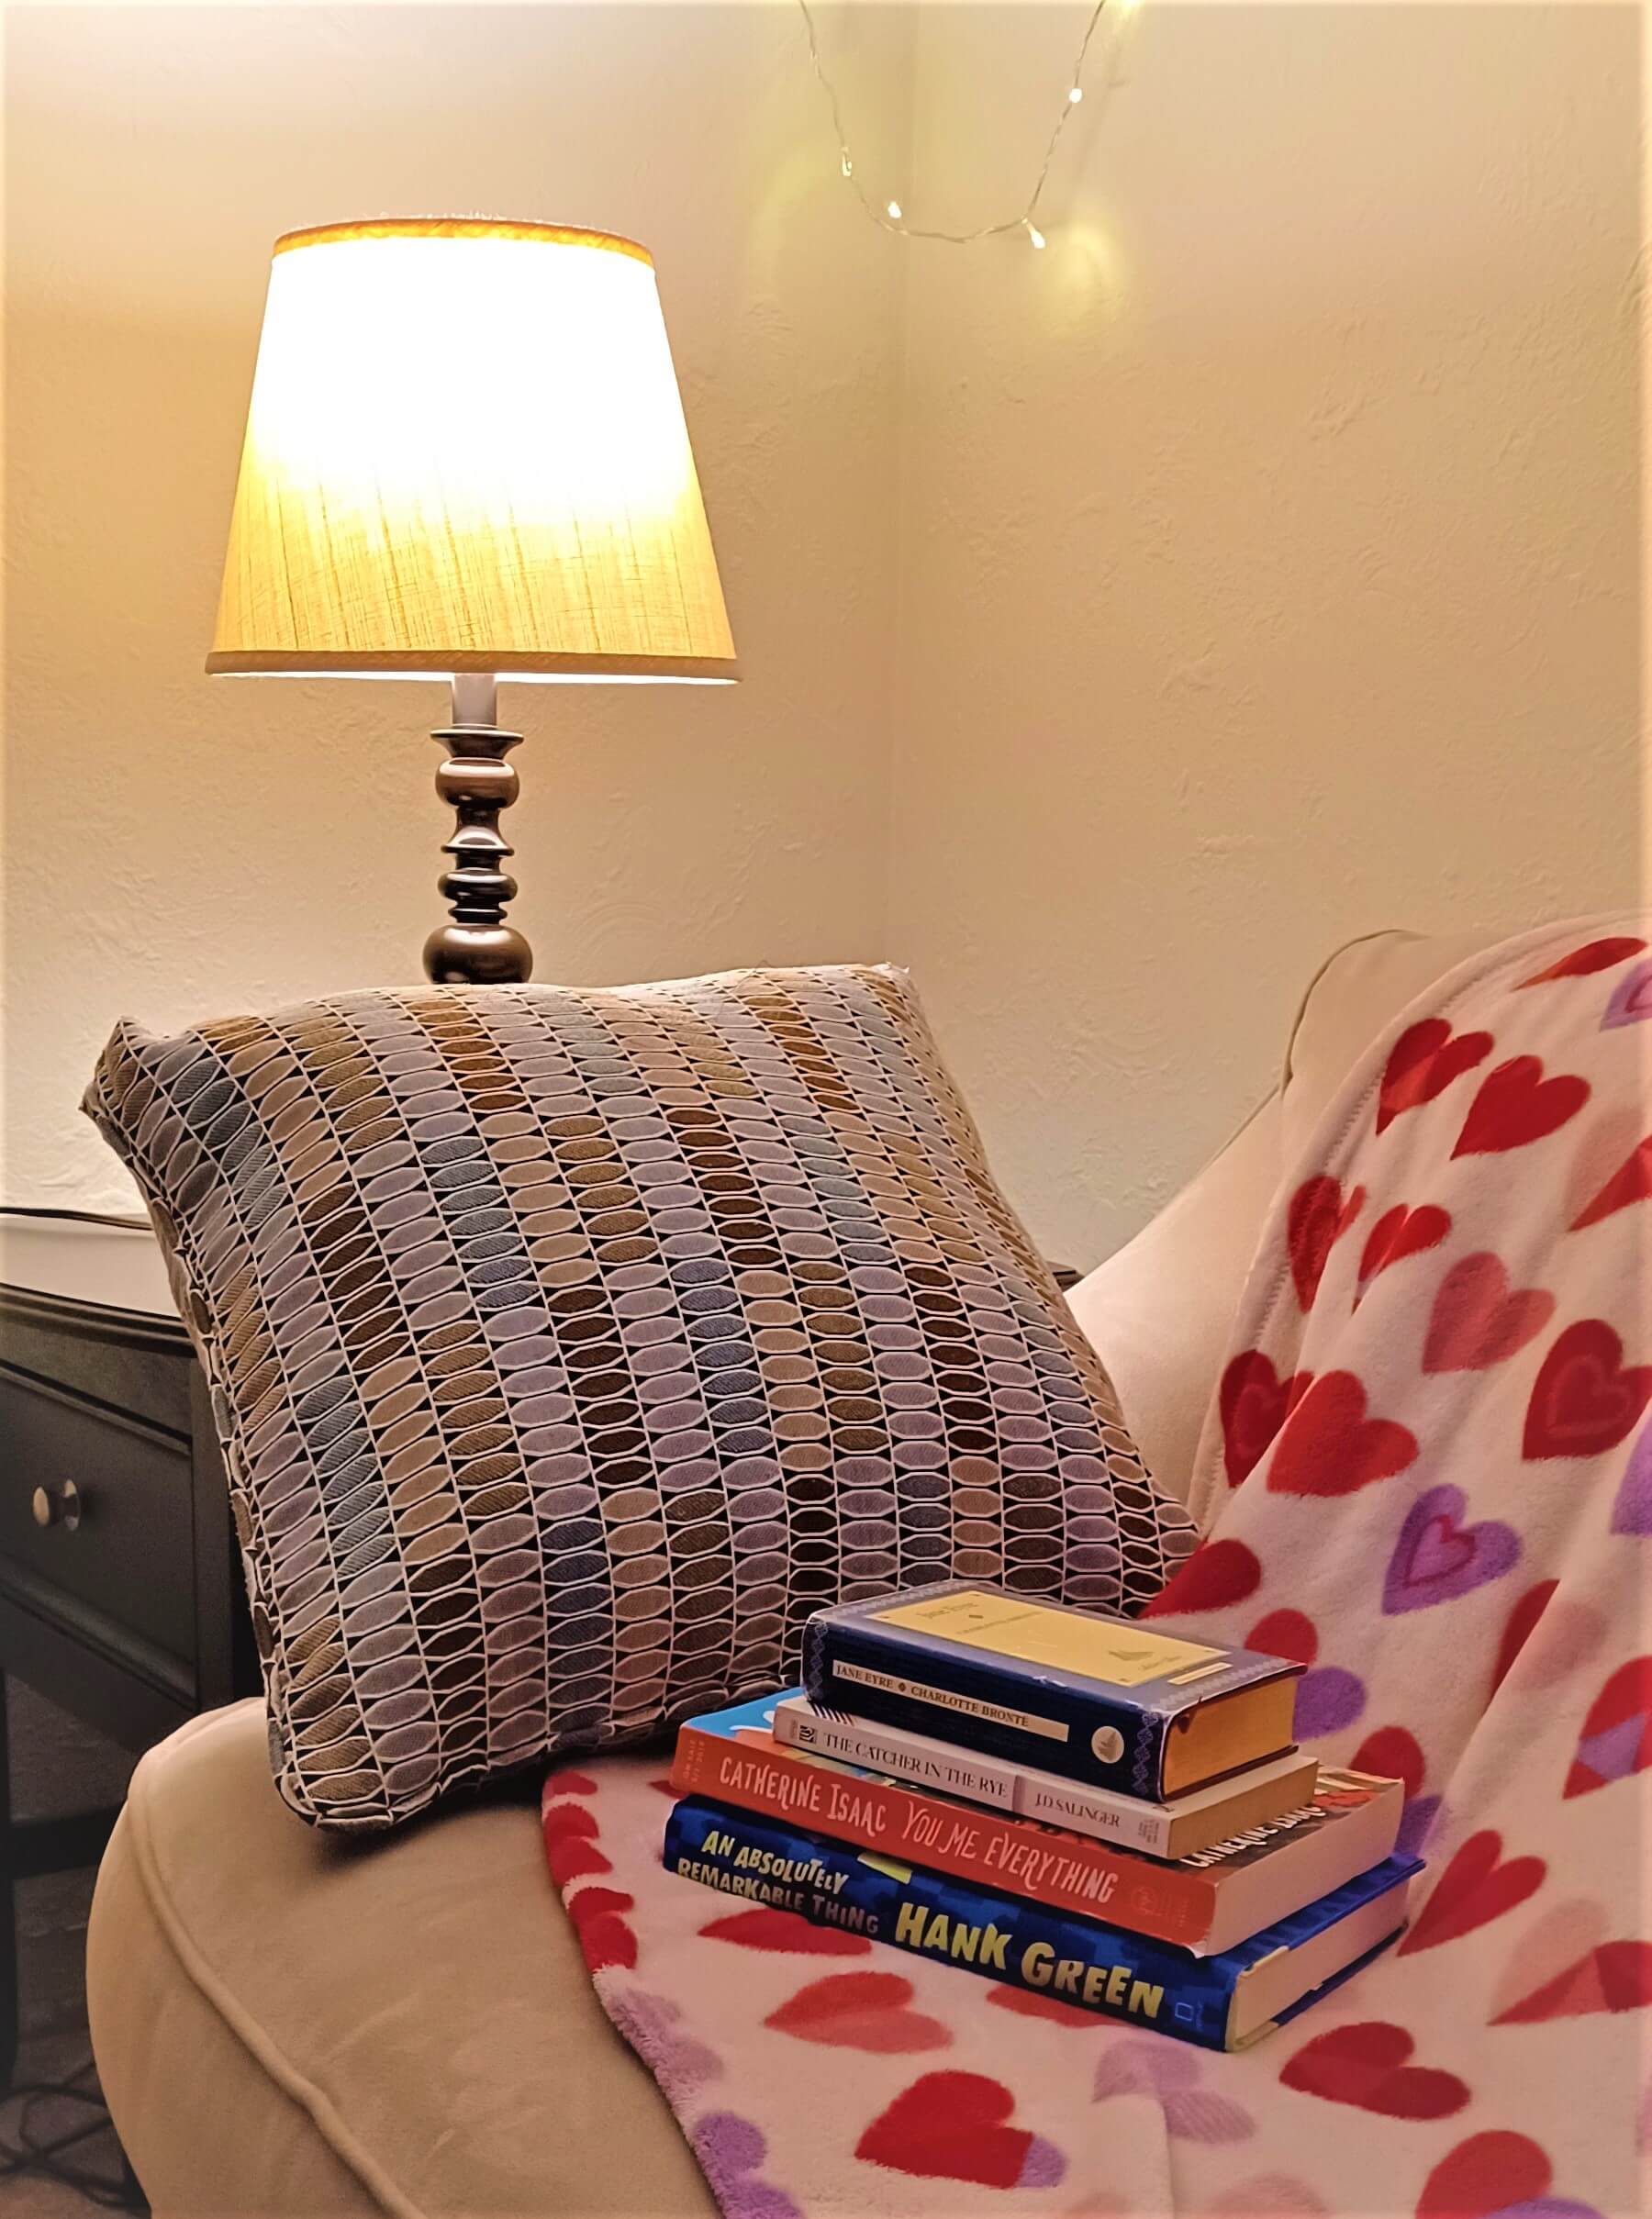 cozy reading vlog lamp blanket books